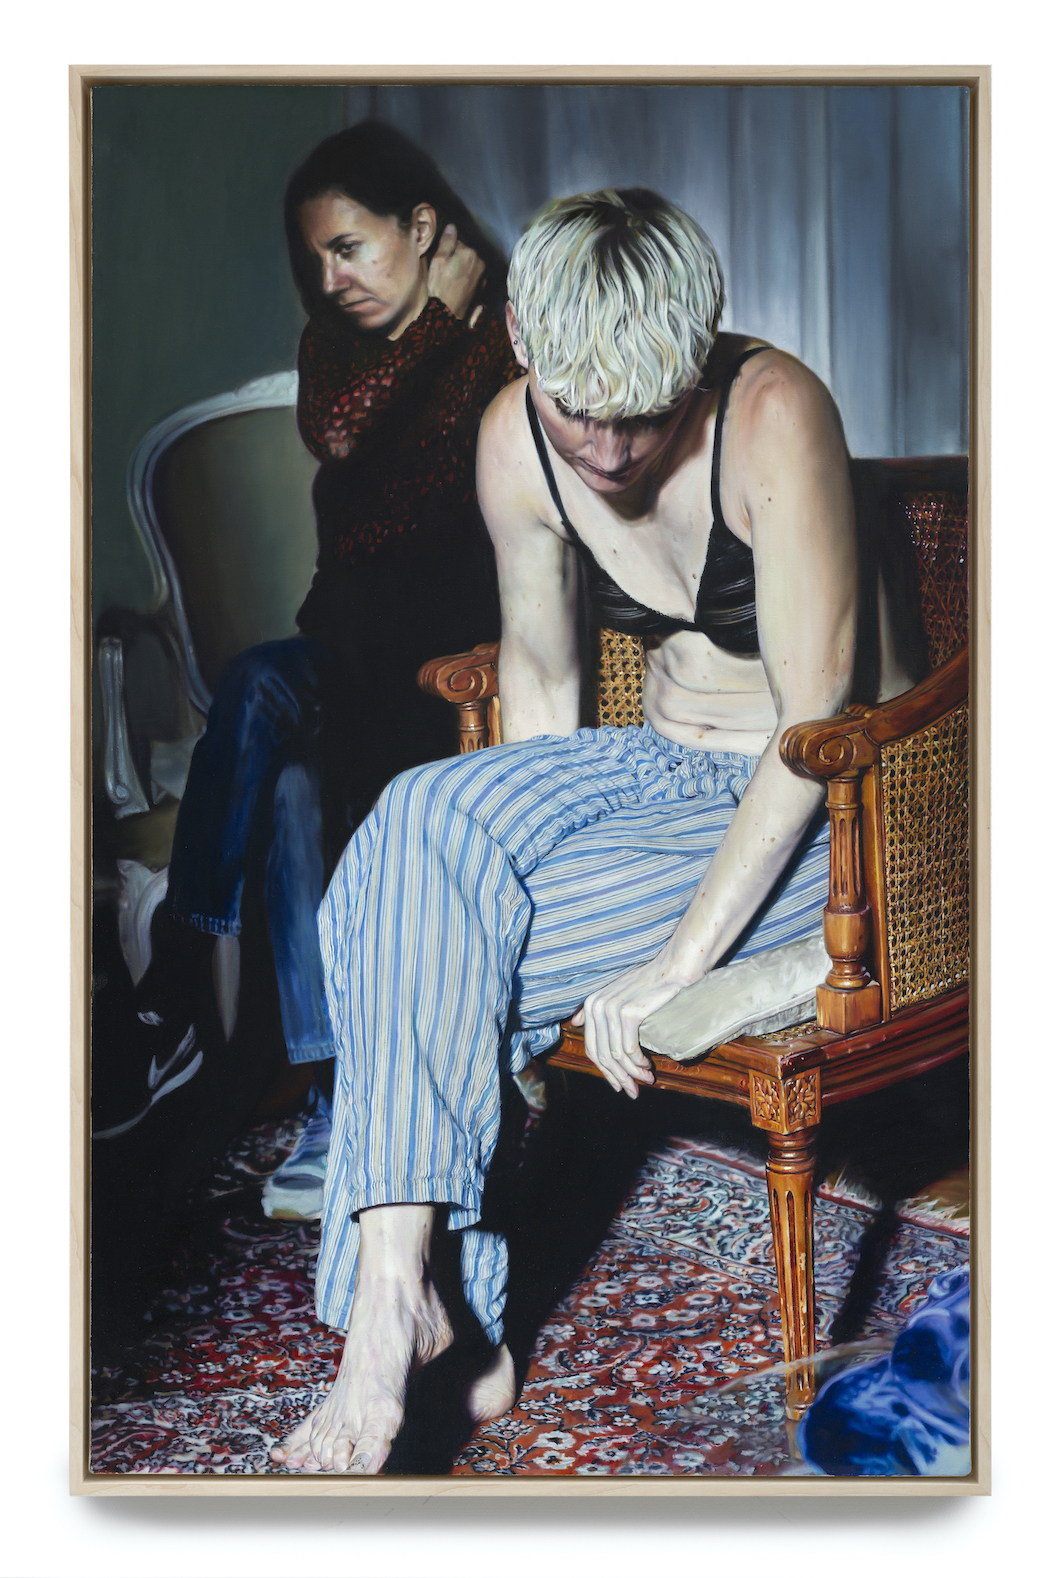 Niklas Holmgren: "YL", 2020. Oil on canvas, 117 x 97 cm